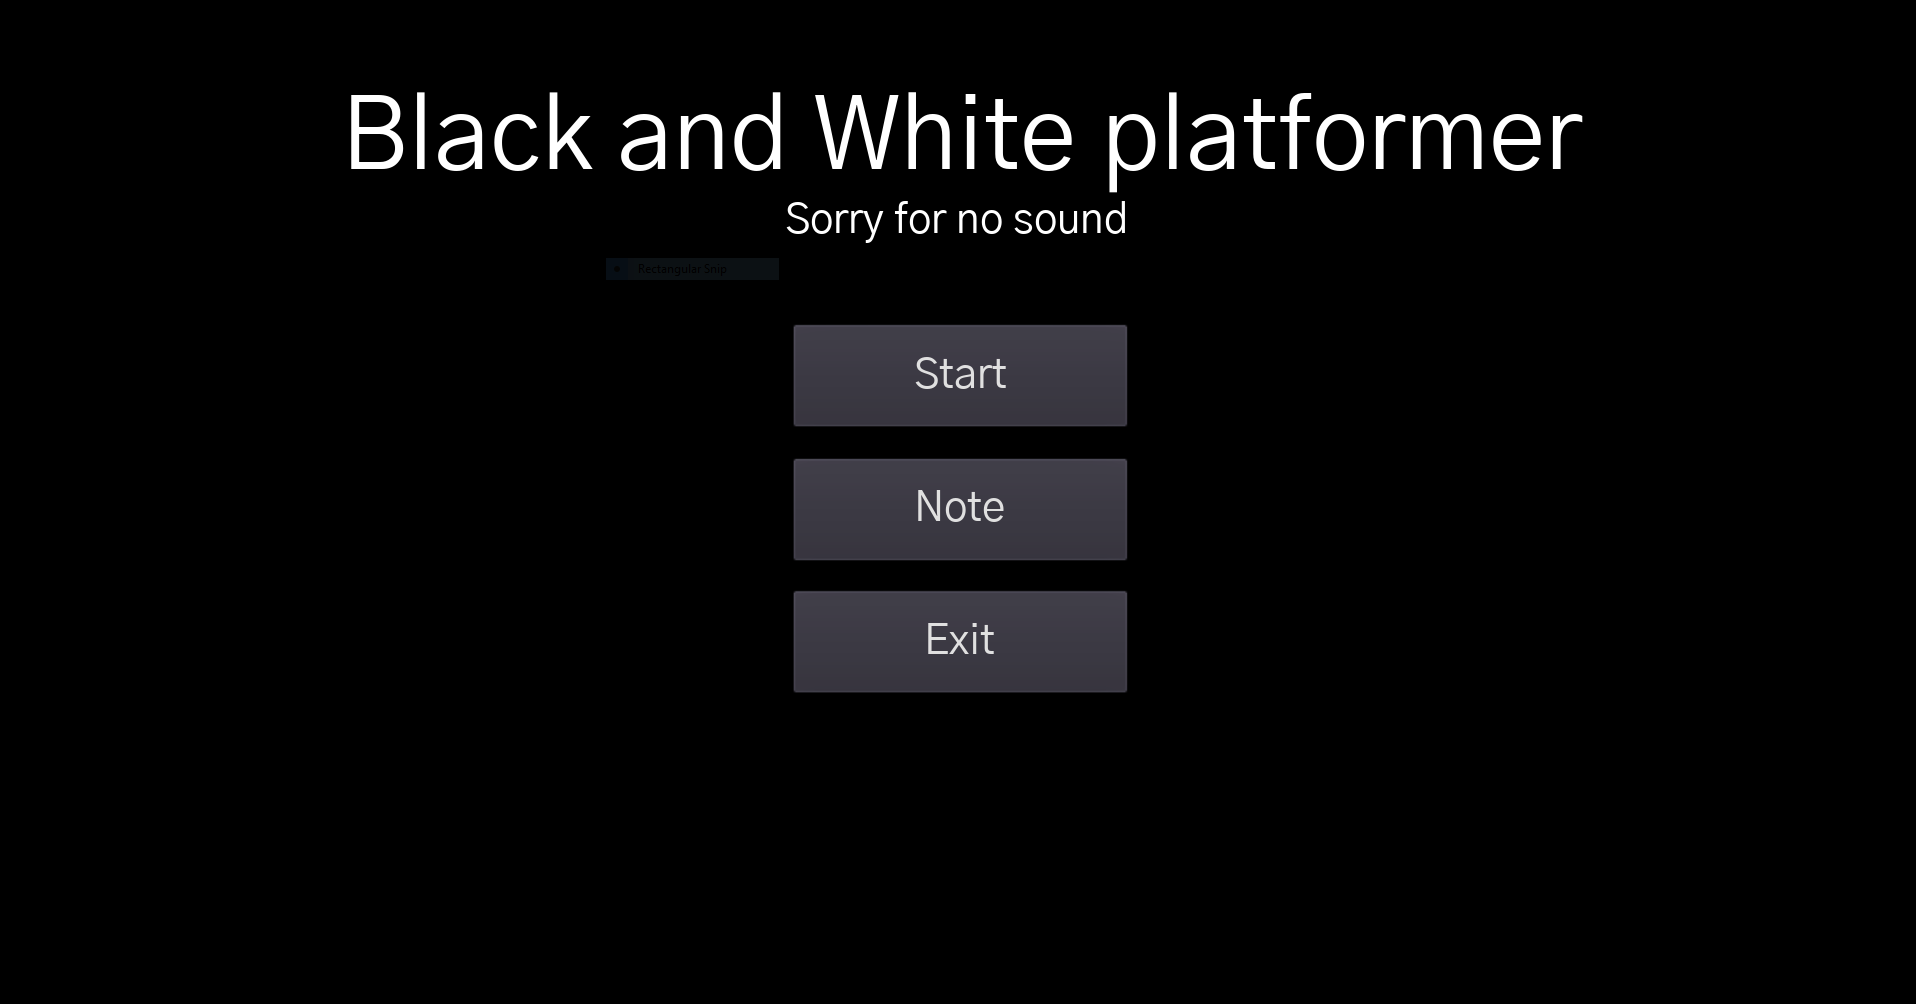 Black and White platformer